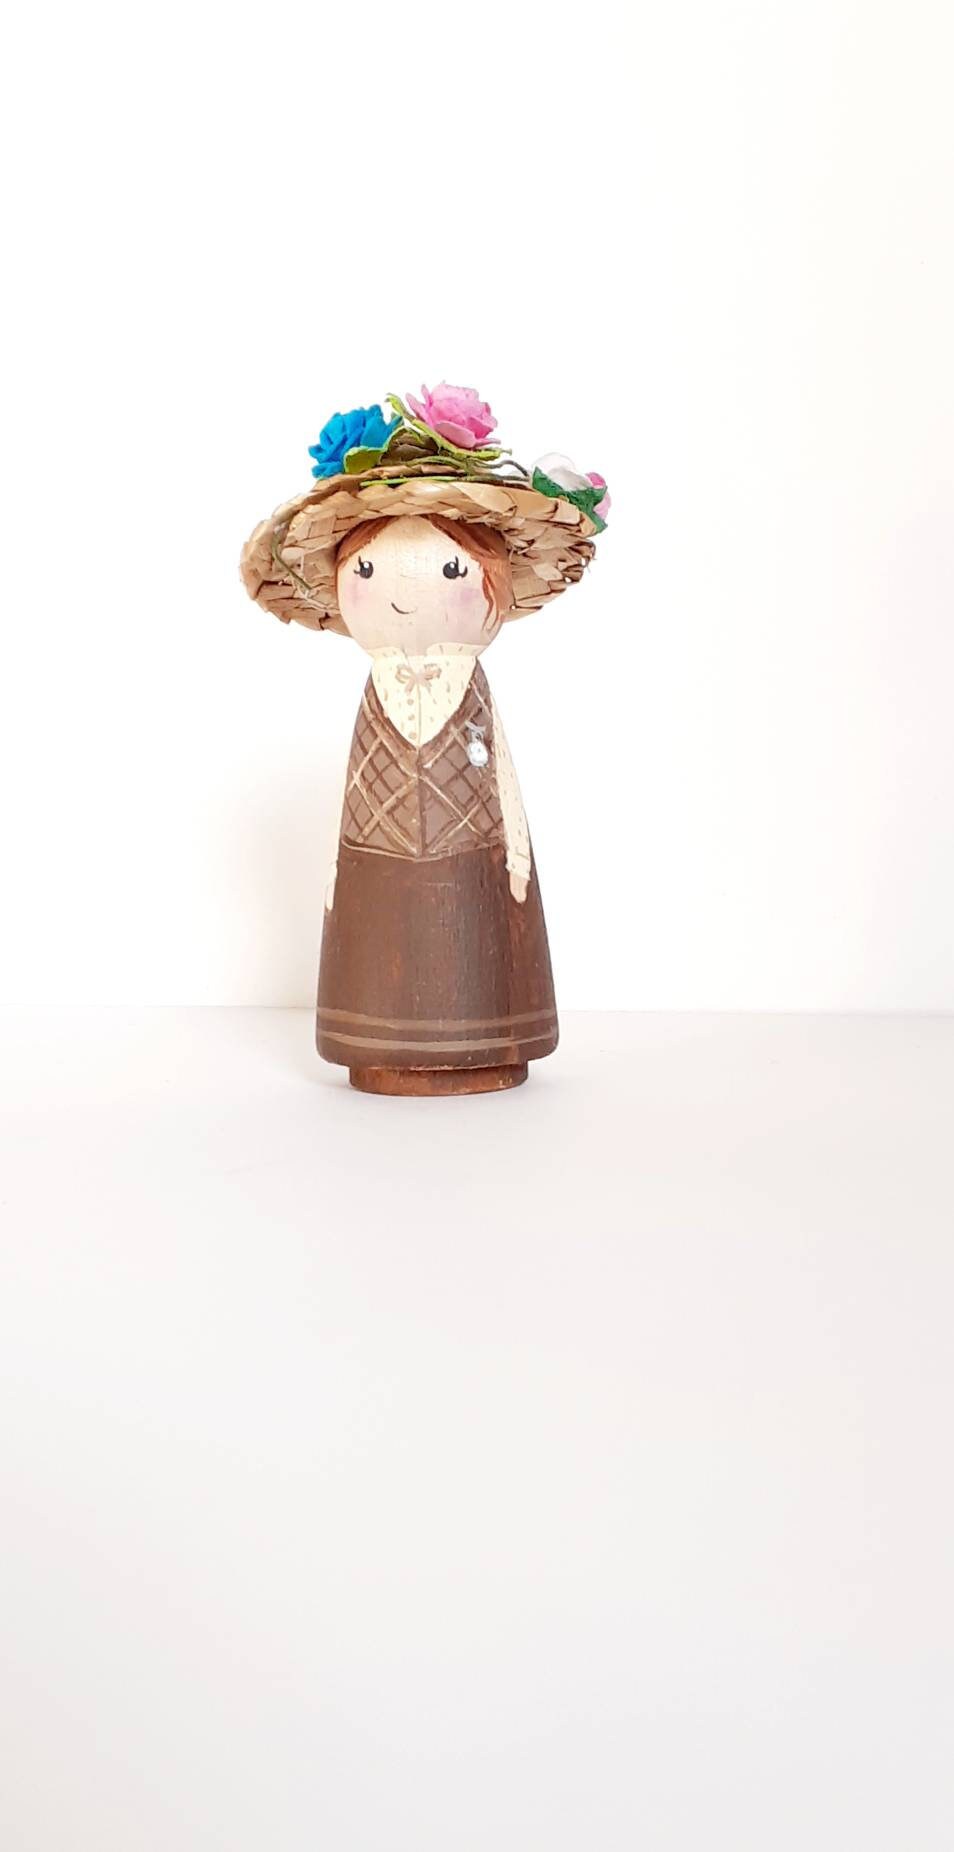 Anne of Green Gables peg dolls